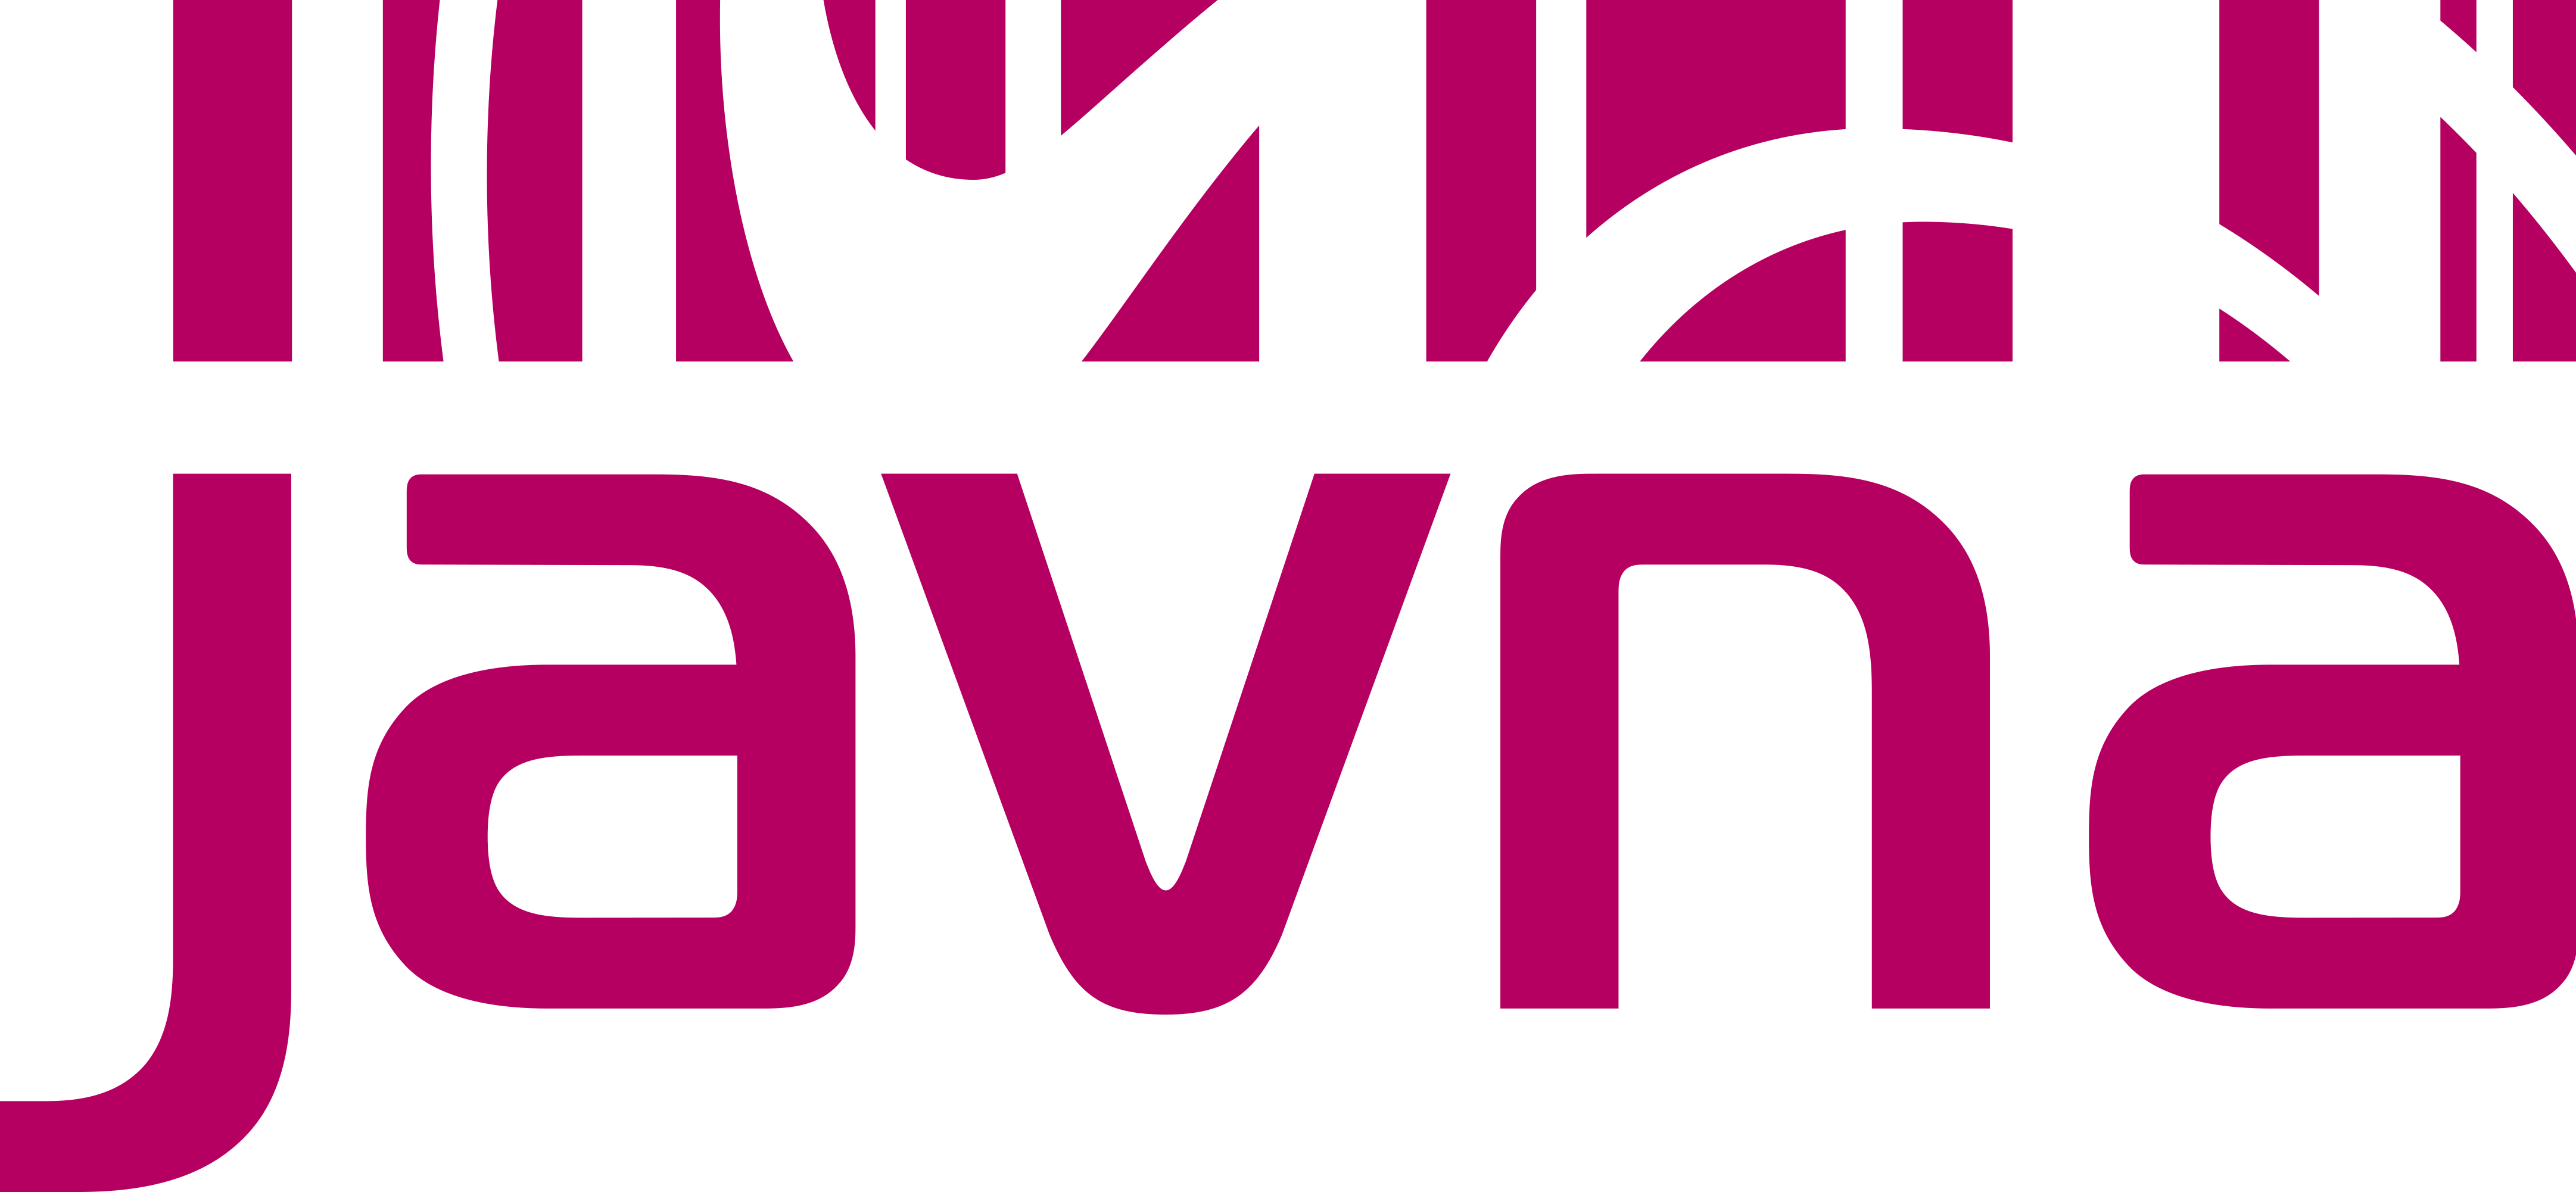 Javna new logo